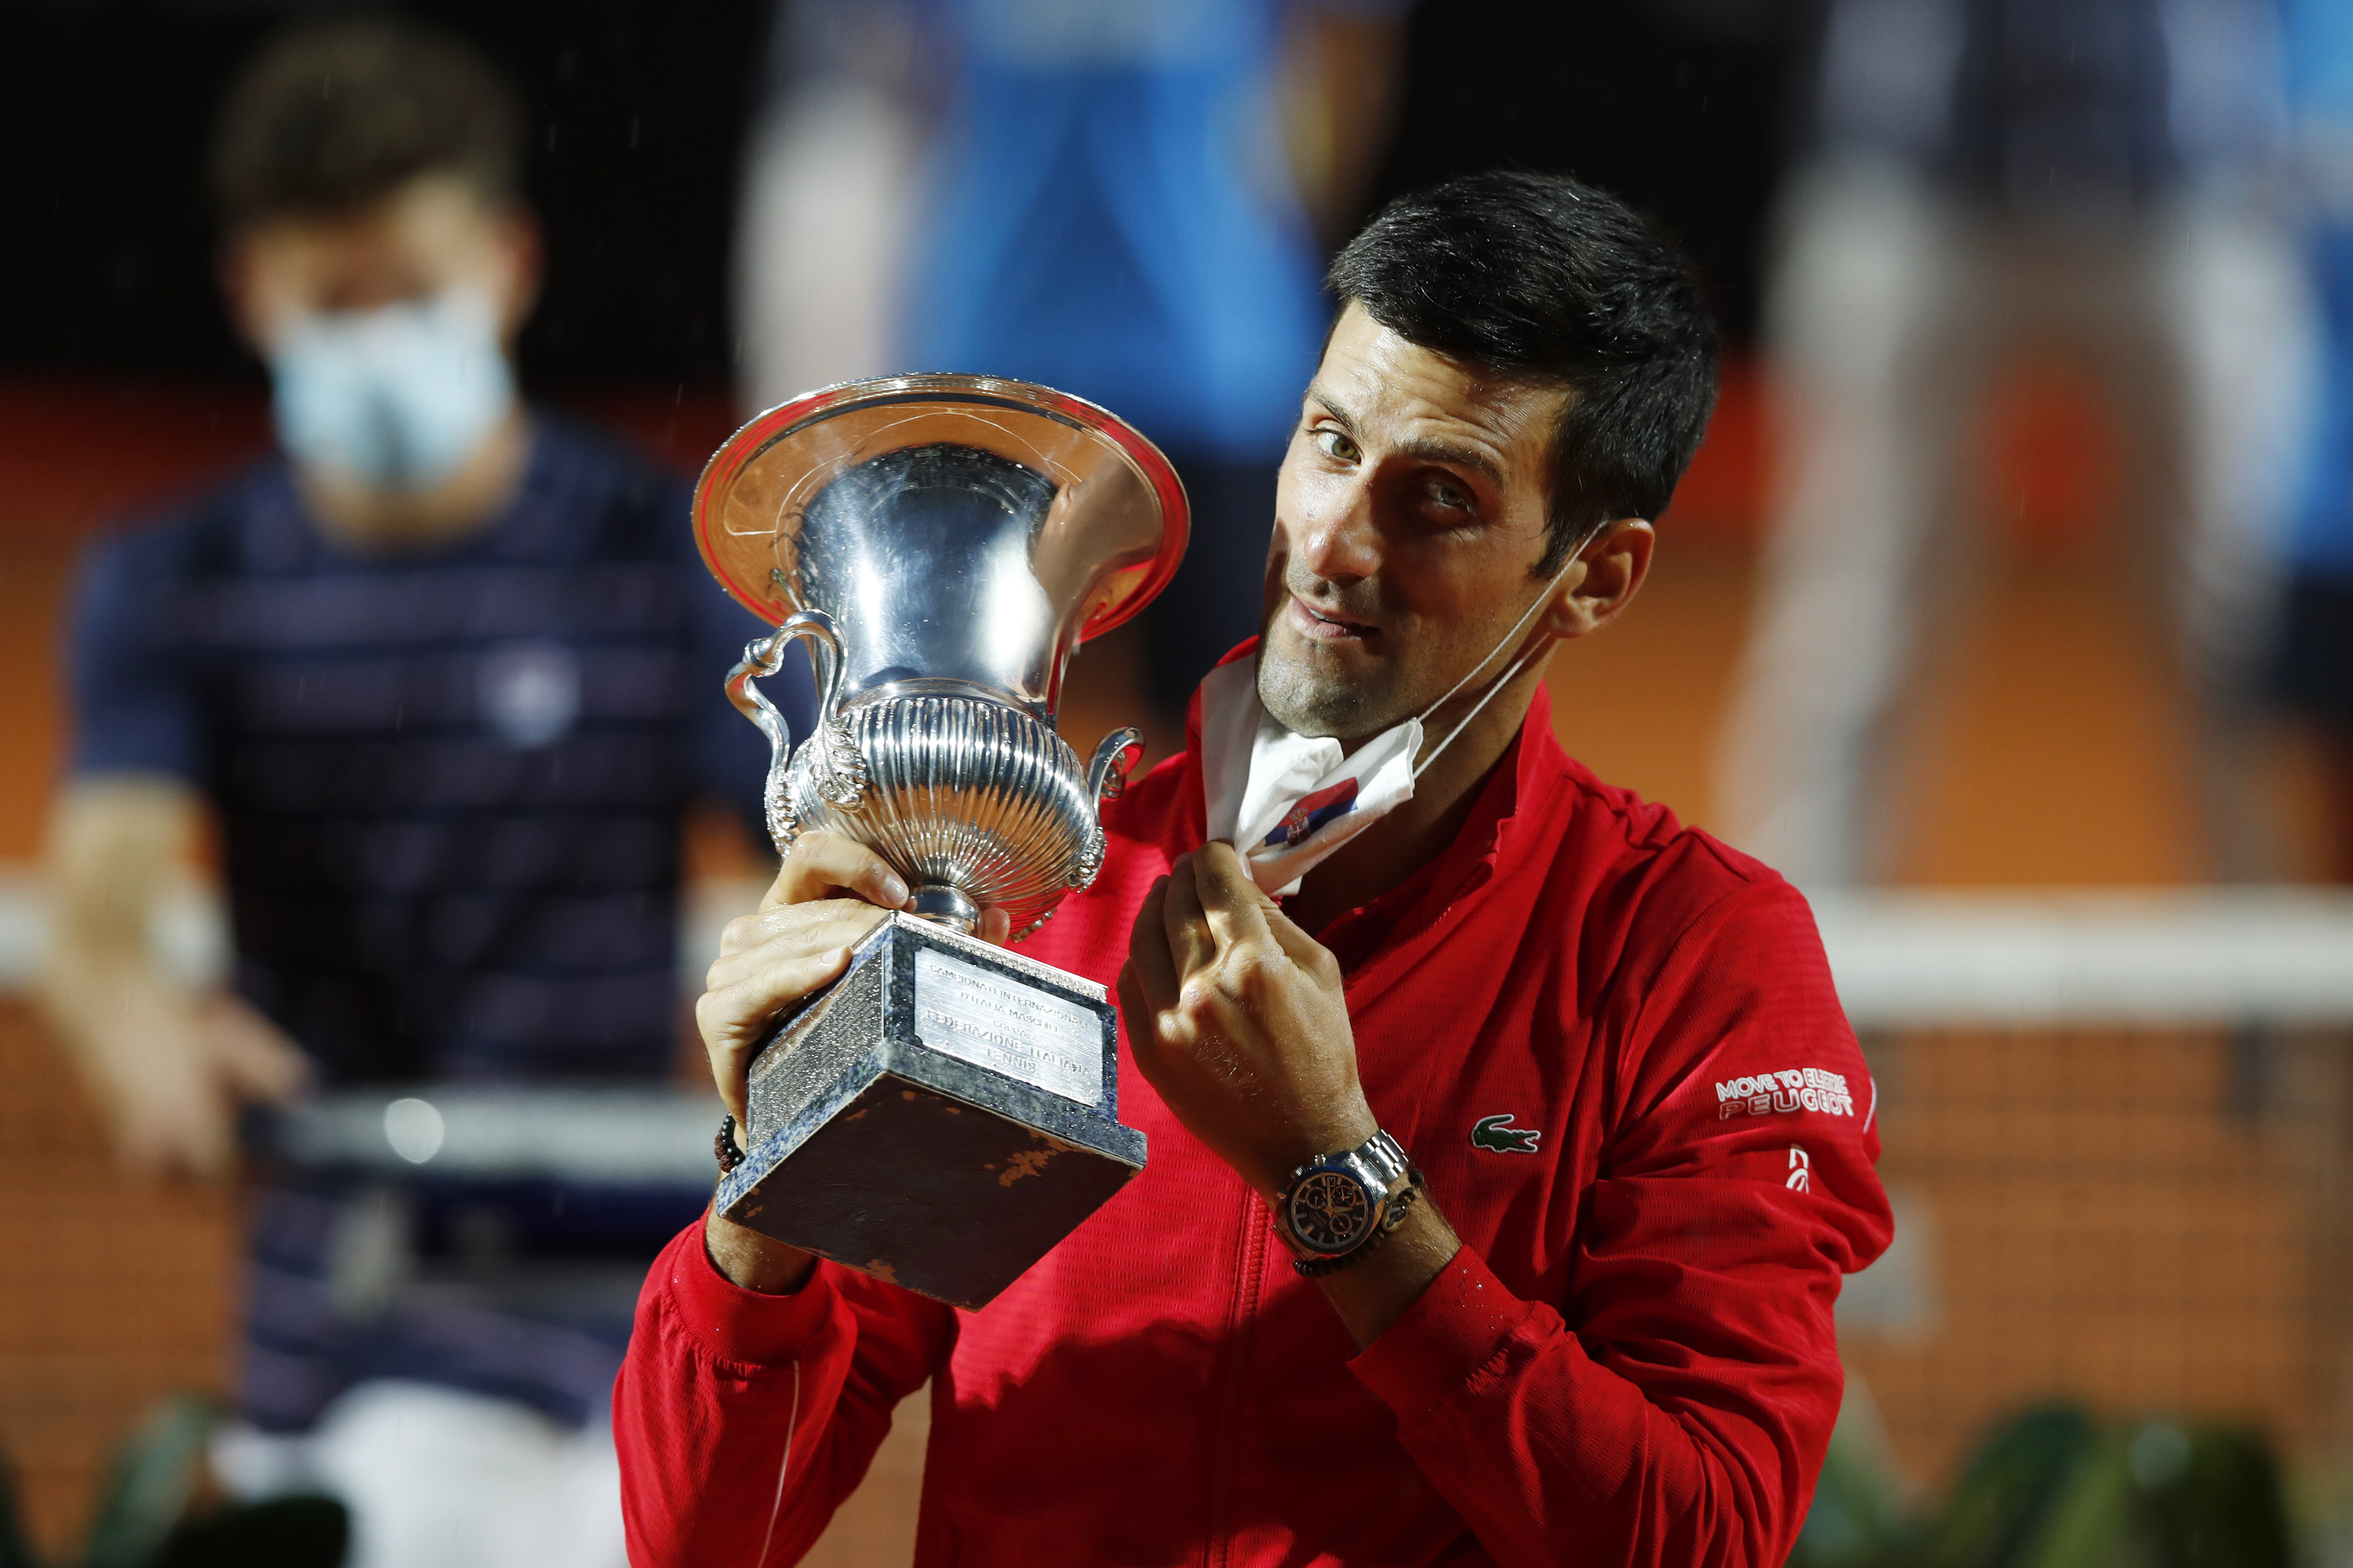 Un nou succes pentru Djokovic! Sârbul a câștigat turneul Masters 1000 de la Roma